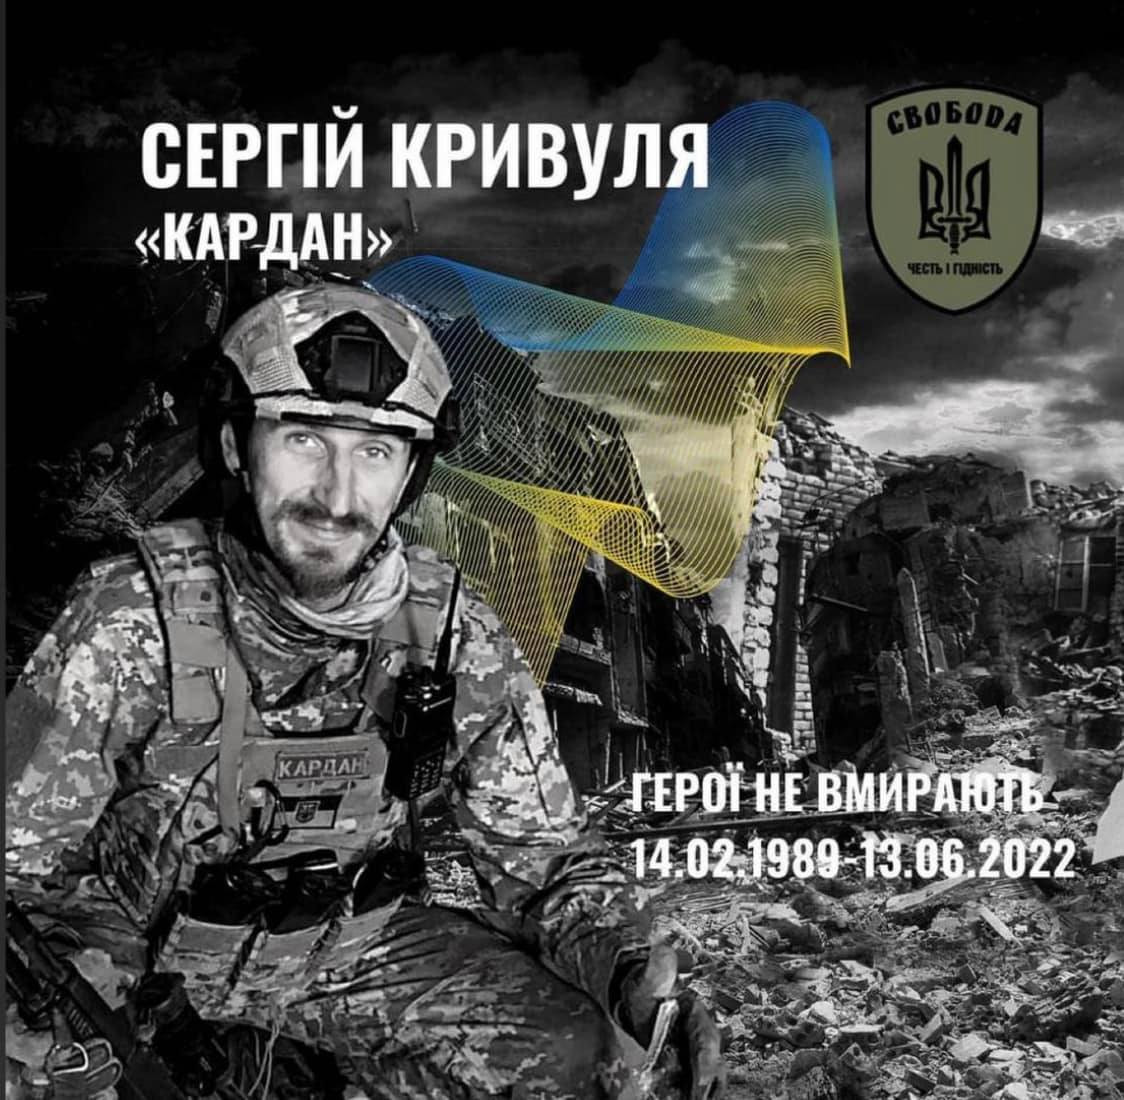 Сергій Кривуля (Кардан) воїн, який загинув зі зброєю в руках на бойовій позиції у Сіверськодонецьку - зображення